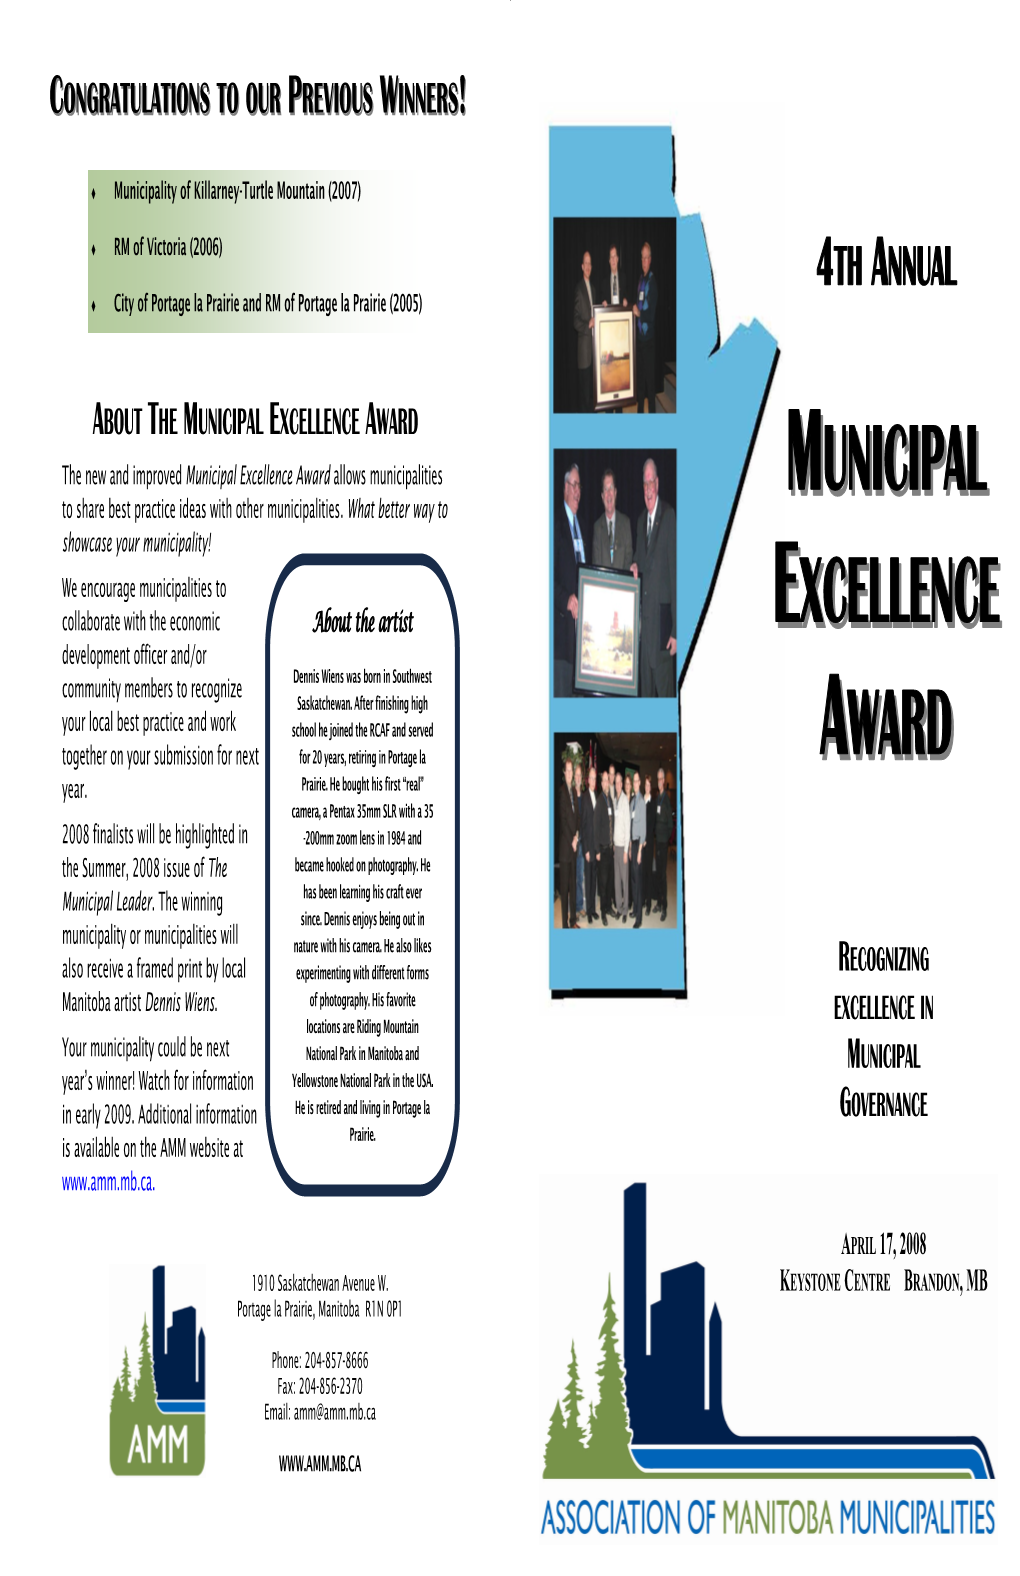 Municipal Excellence Award